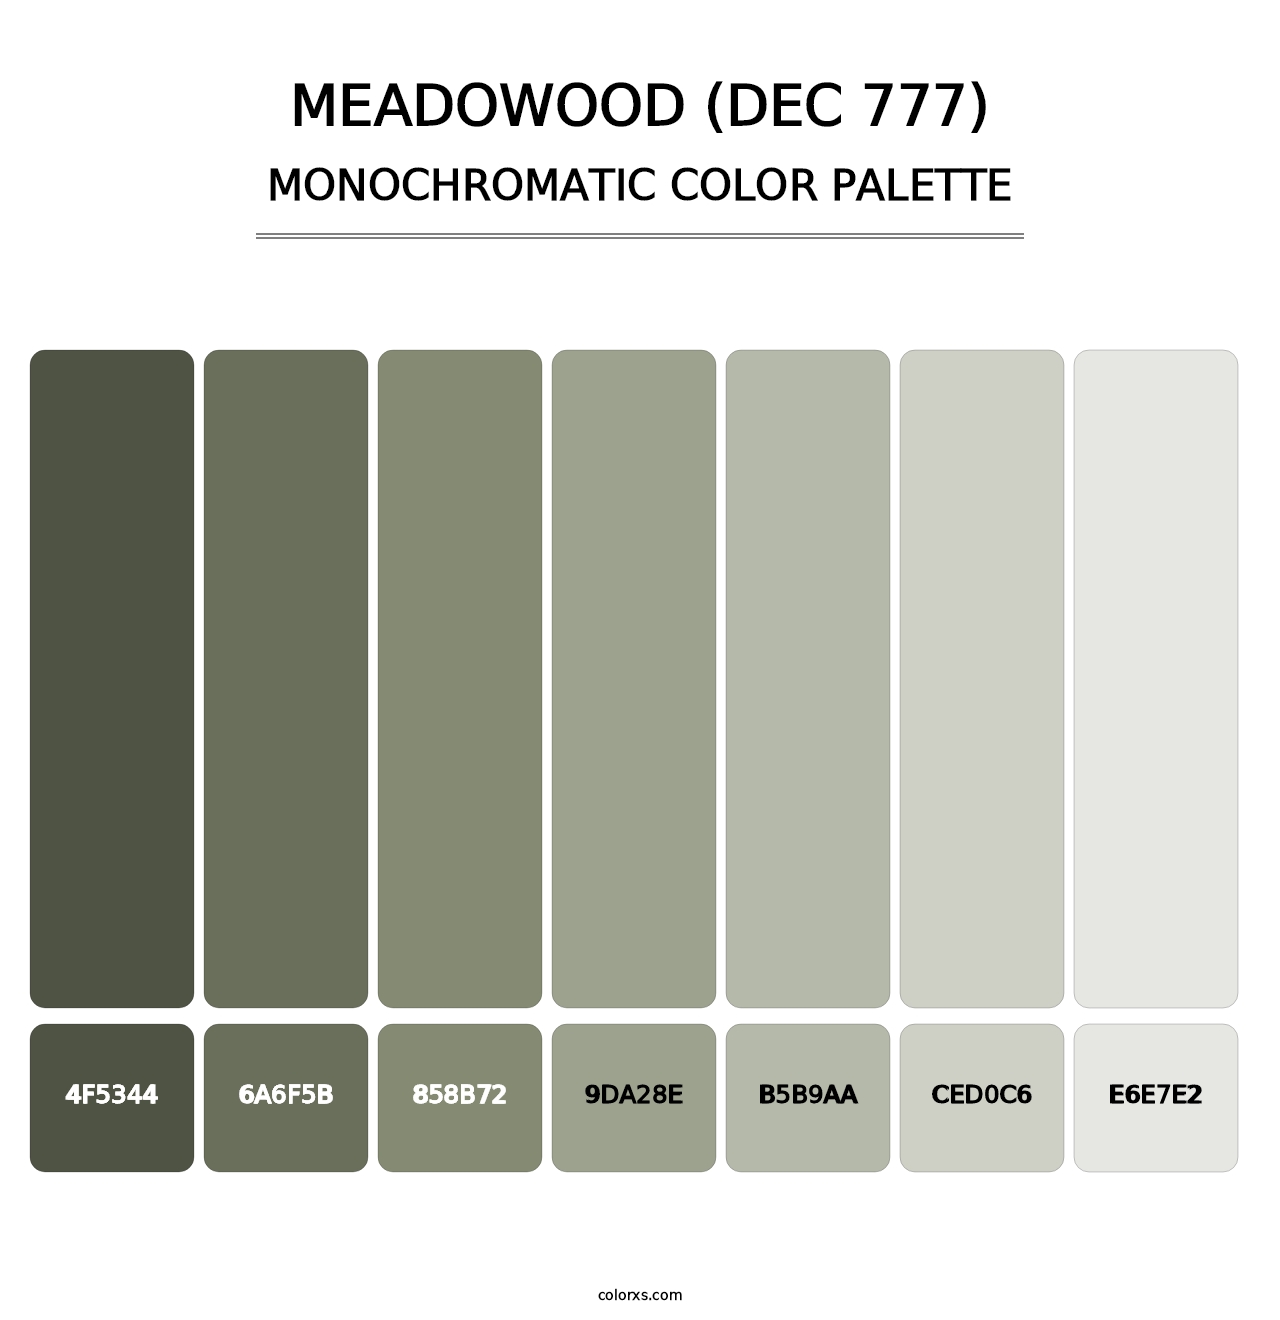 Meadowood (DEC 777) - Monochromatic Color Palette